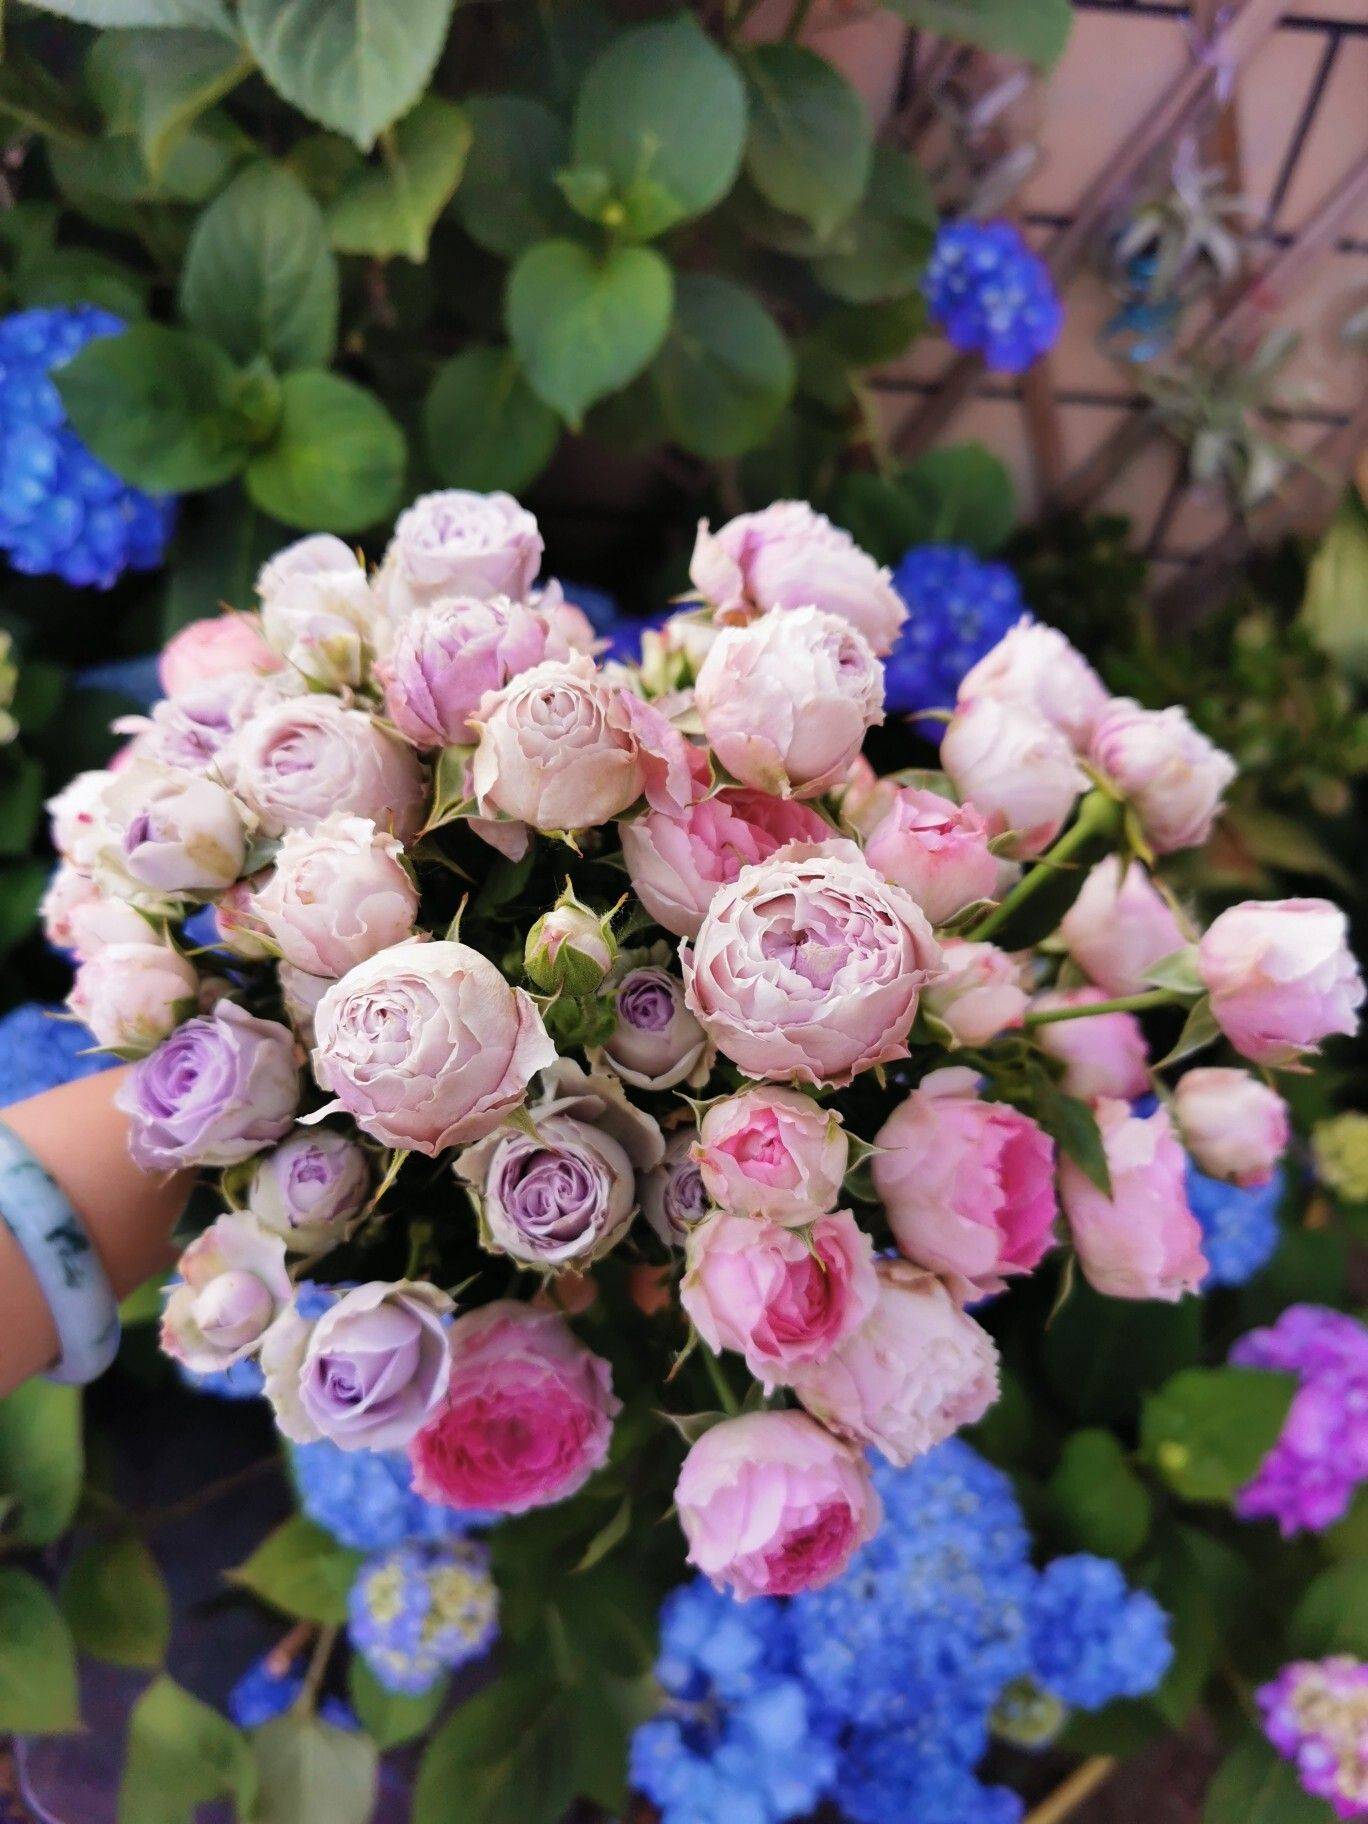 Tận dụng sân thượng làm vườn hoa để thỏa mãn đam mê, người mẹ trẻ lại nhận được lời hỏi mua hoa nhiều đến không ngờ - Ảnh 18.